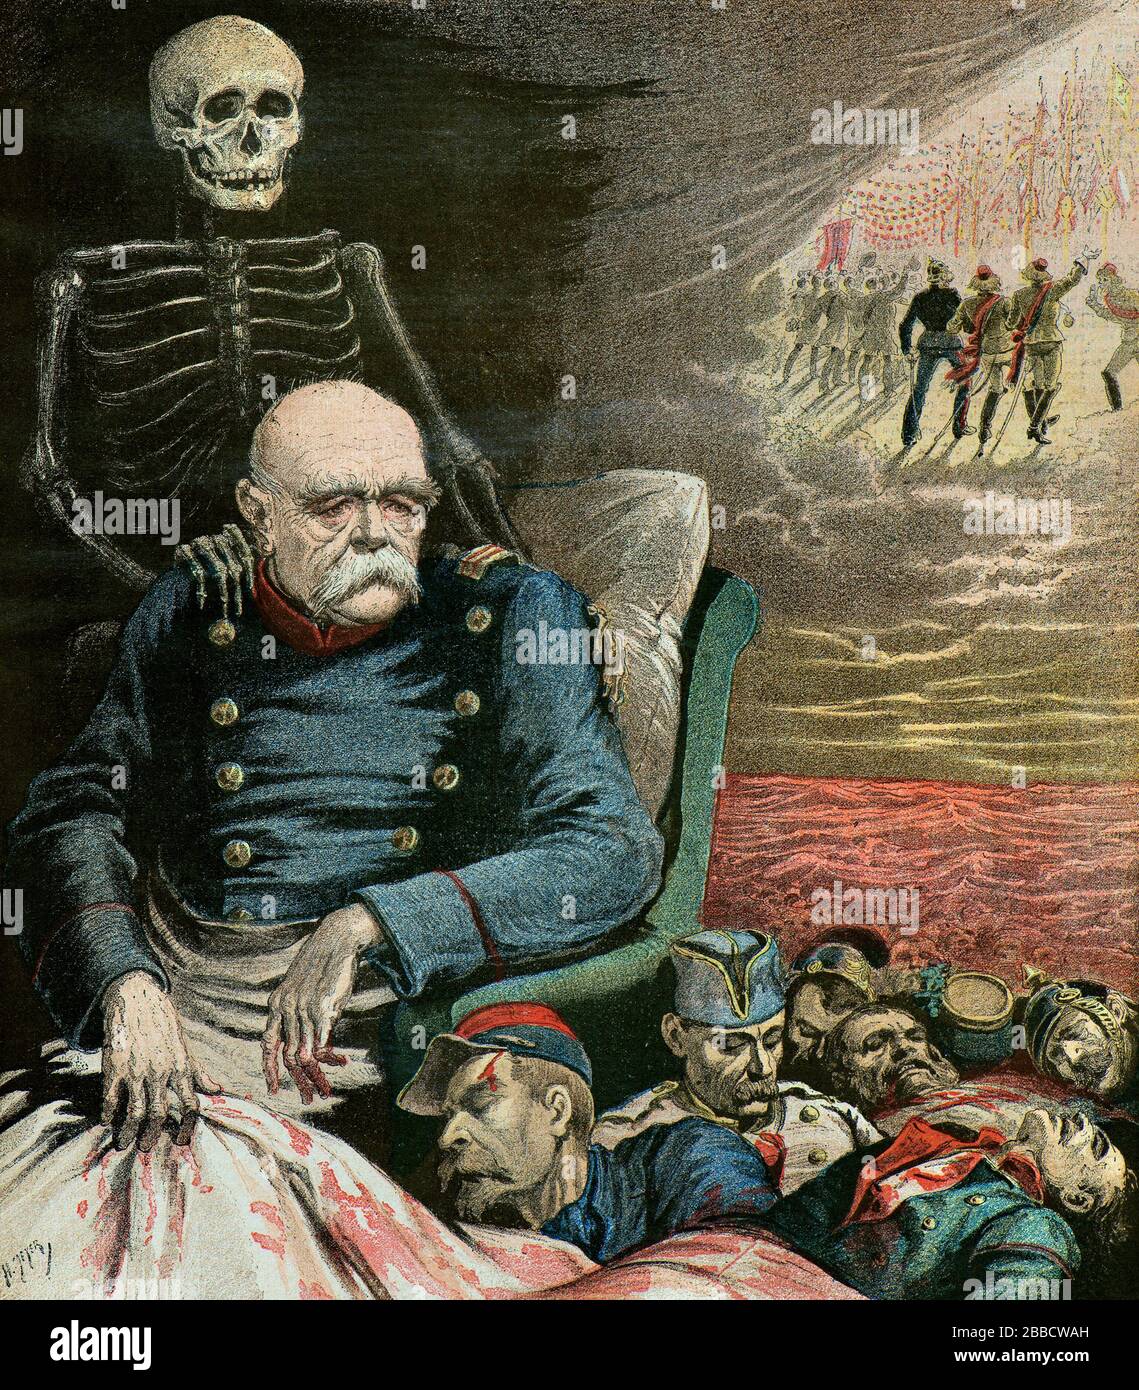 Meyer Henri ( 1841 - 1899 ) - Retrato de la caricatura de Otto Von Bismarck, cuando se acerca a la muerte contempla los cadáveres de soldados franceses - Colección privada Foto de stock